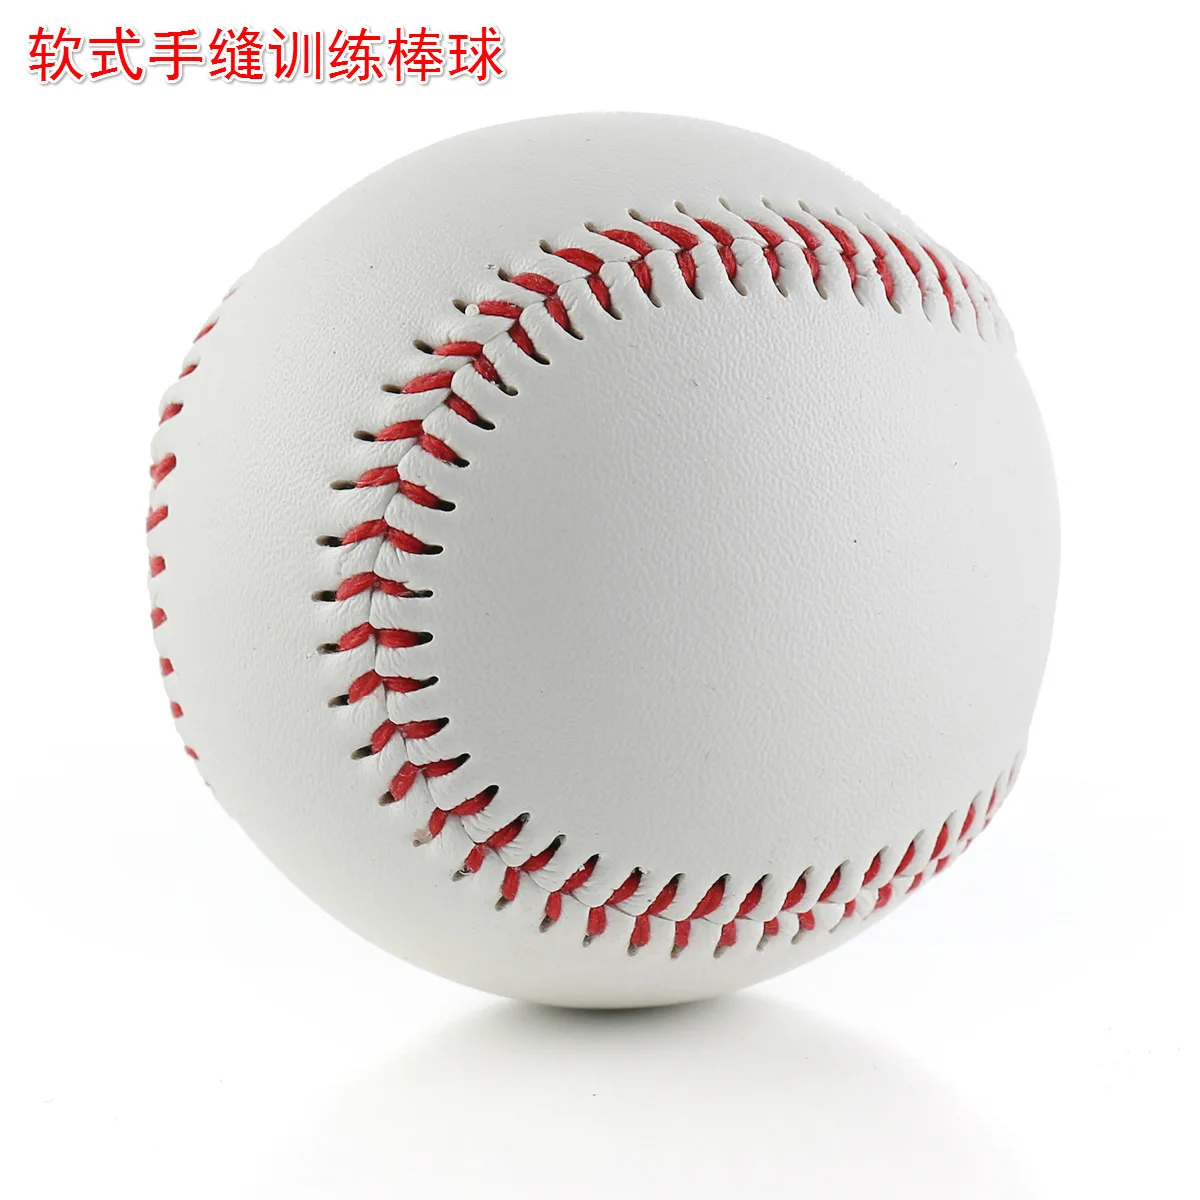 2021 хит! Бейсбол № 9 мячи ручной работы для тренировок по софтболу товары фитнеса